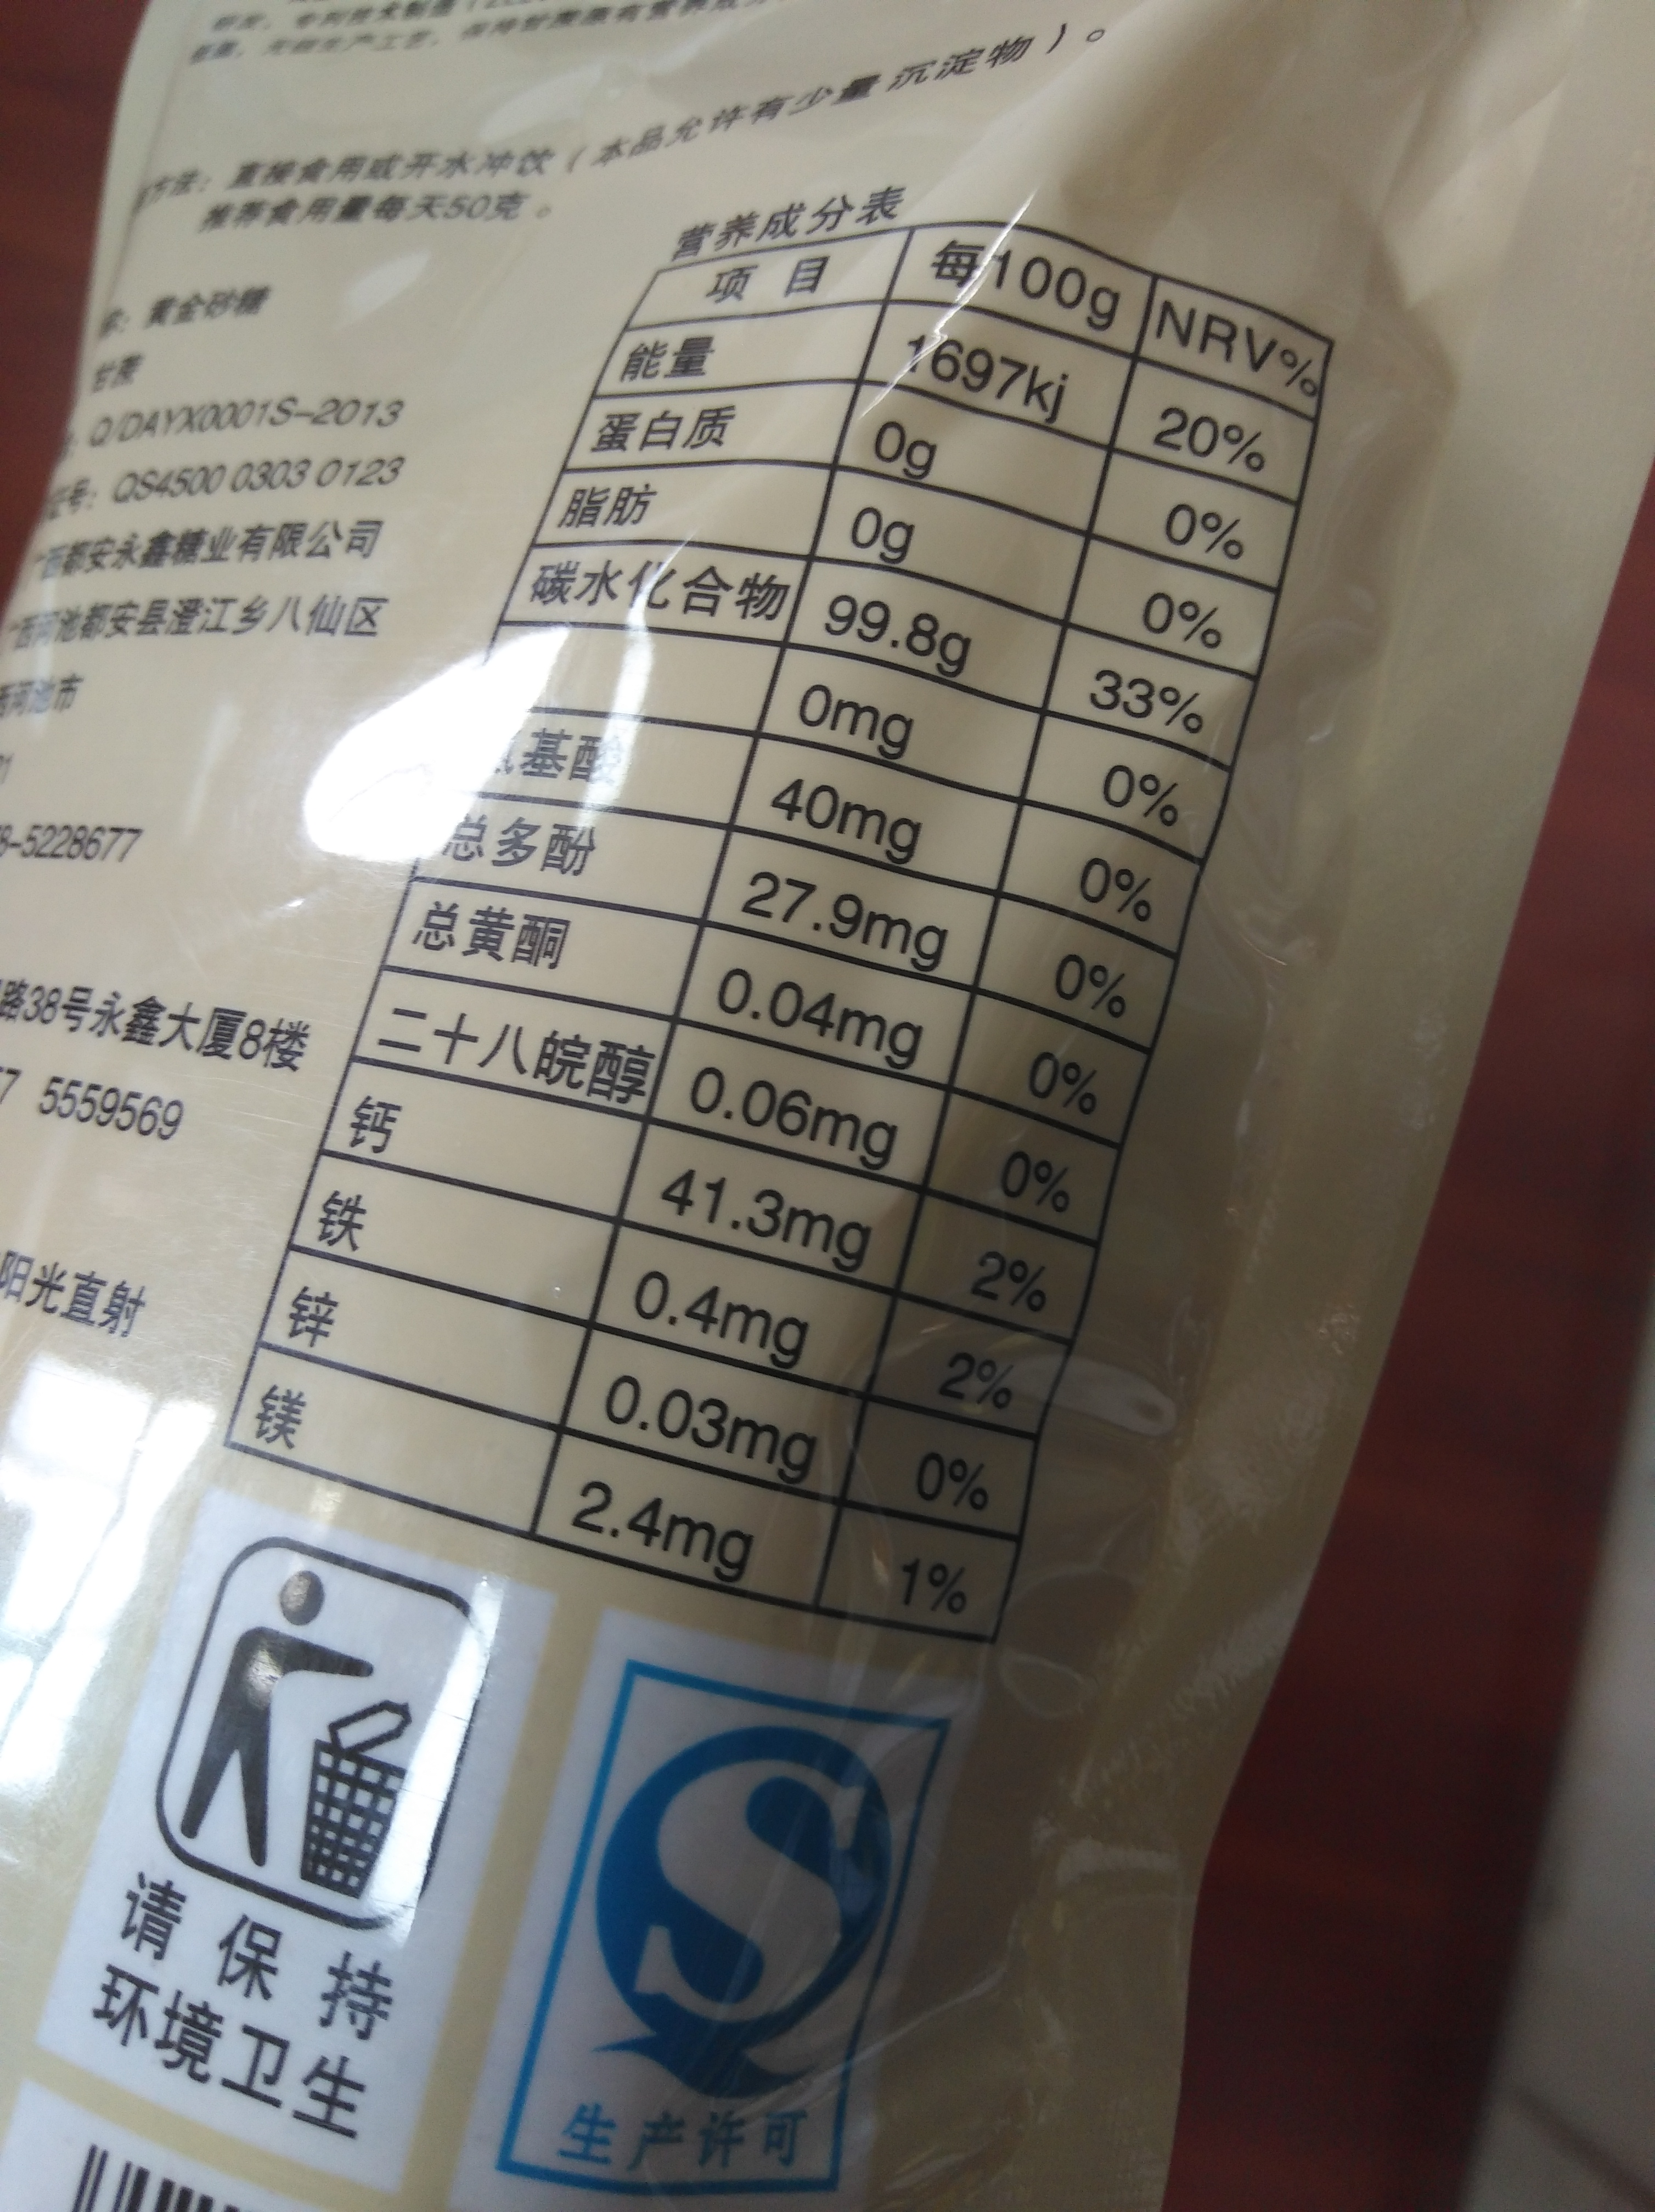 预包装食品标签标识图片